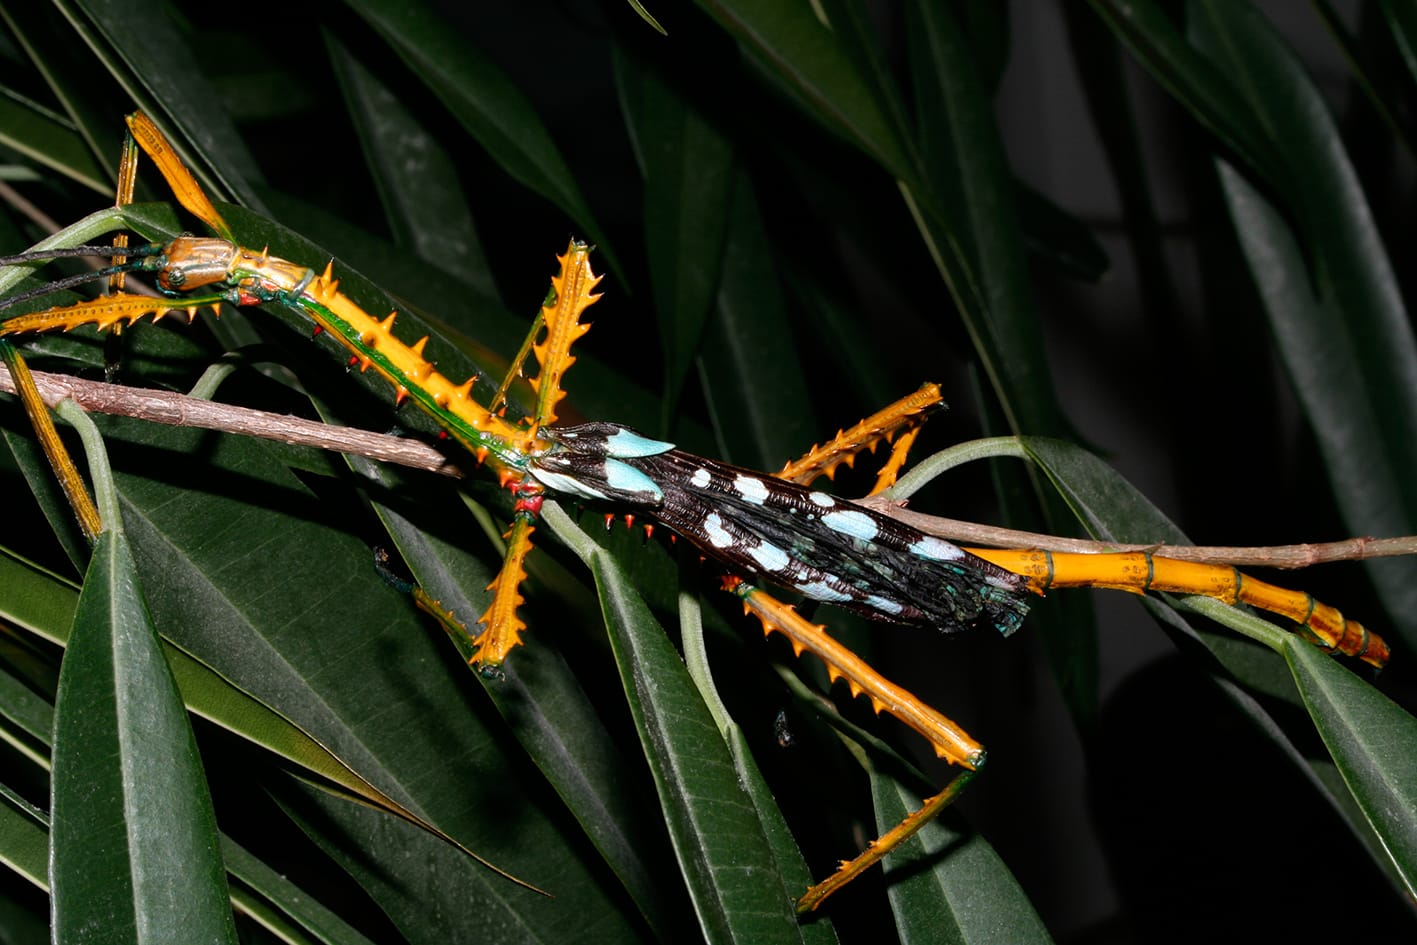 Riesige knallbunte Insekten auf Madagaskar gefunden